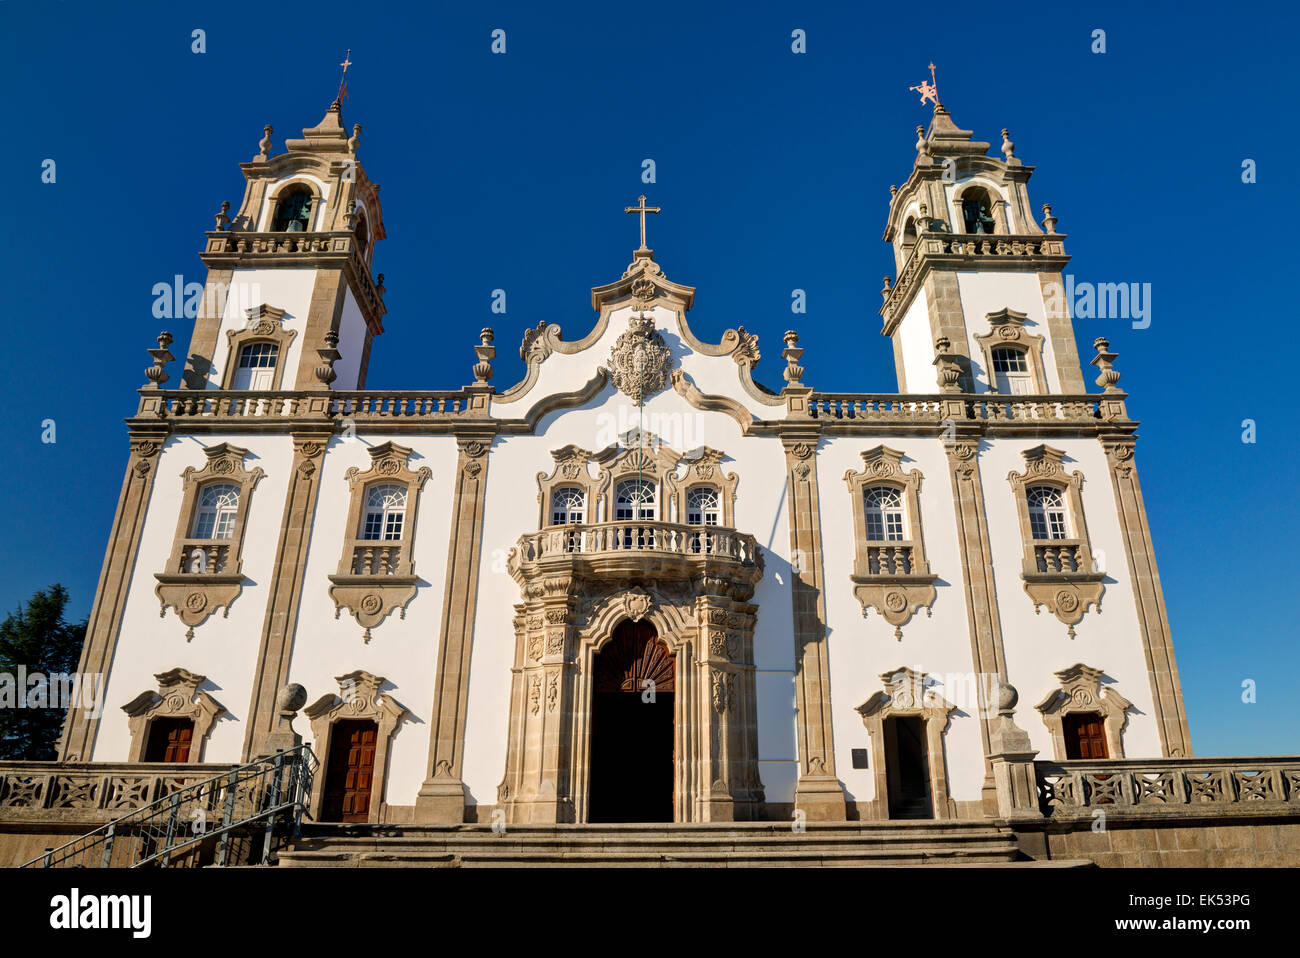 Il Portogallo centrale, Viseu, Igreja da chiesa della Misericordia in stile rococò Foto Stock